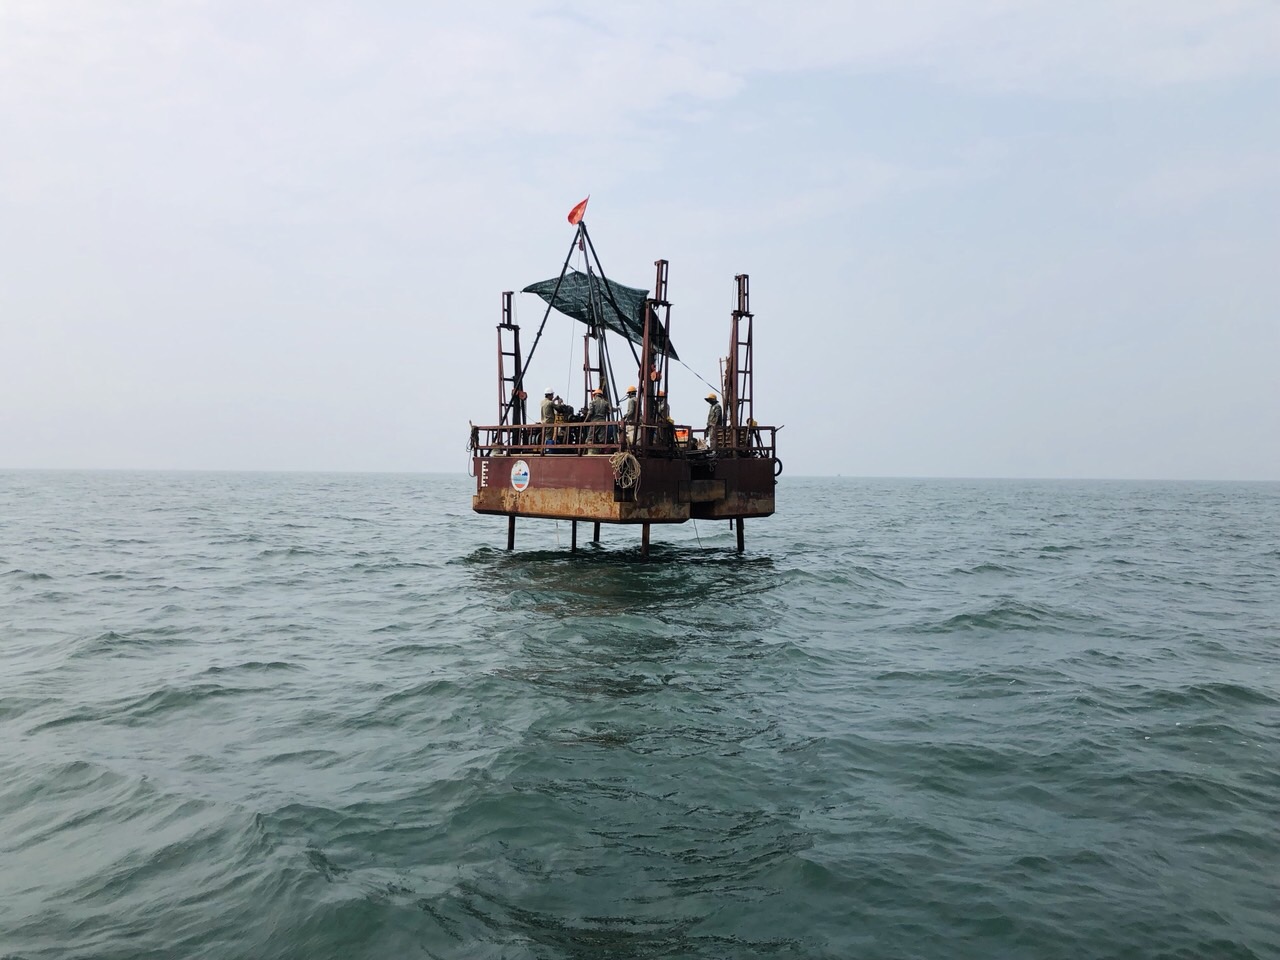 Ảnh 5: Giàn khoan biển GKB.01 của Liên đoàn Địa chất và Khoáng sản biển đang hoạt động tại vùng biển Nam Định.